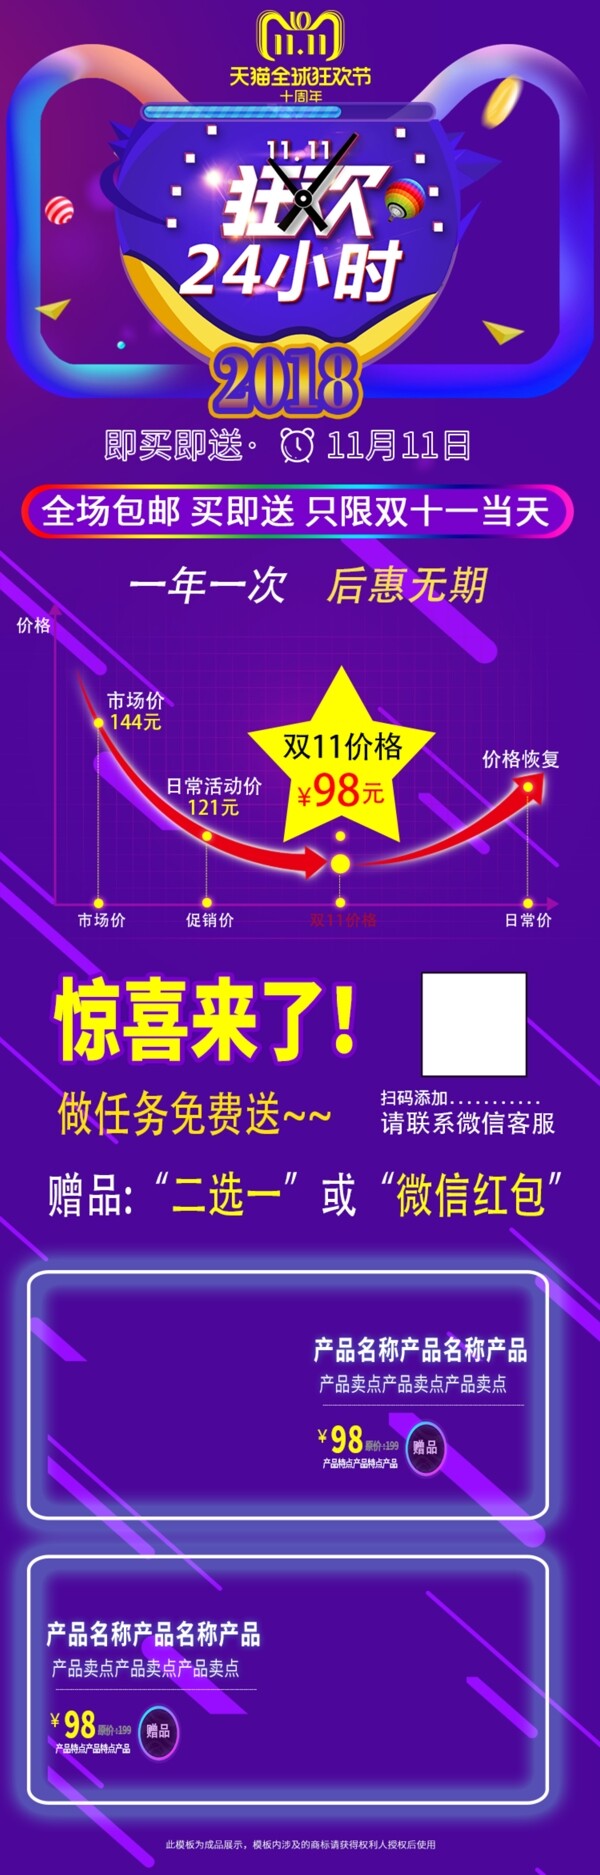 电商淘宝双11关联销售天猫紫色模板